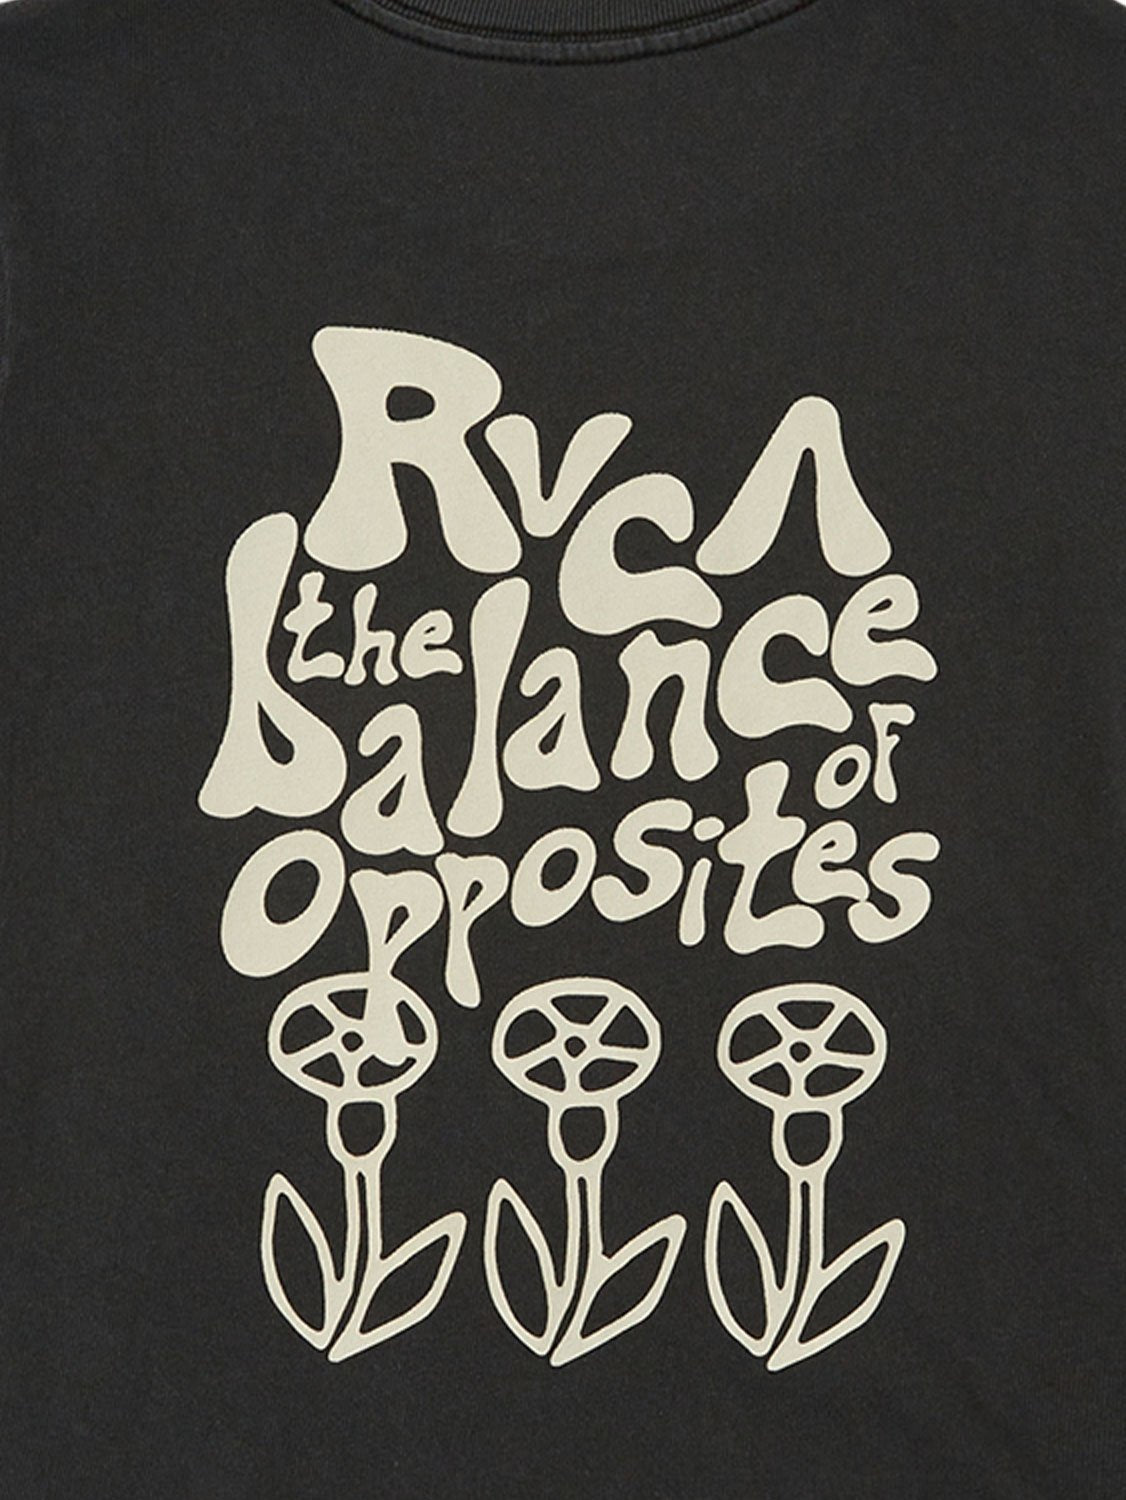 RVCA Ladies 411 T-Shirt